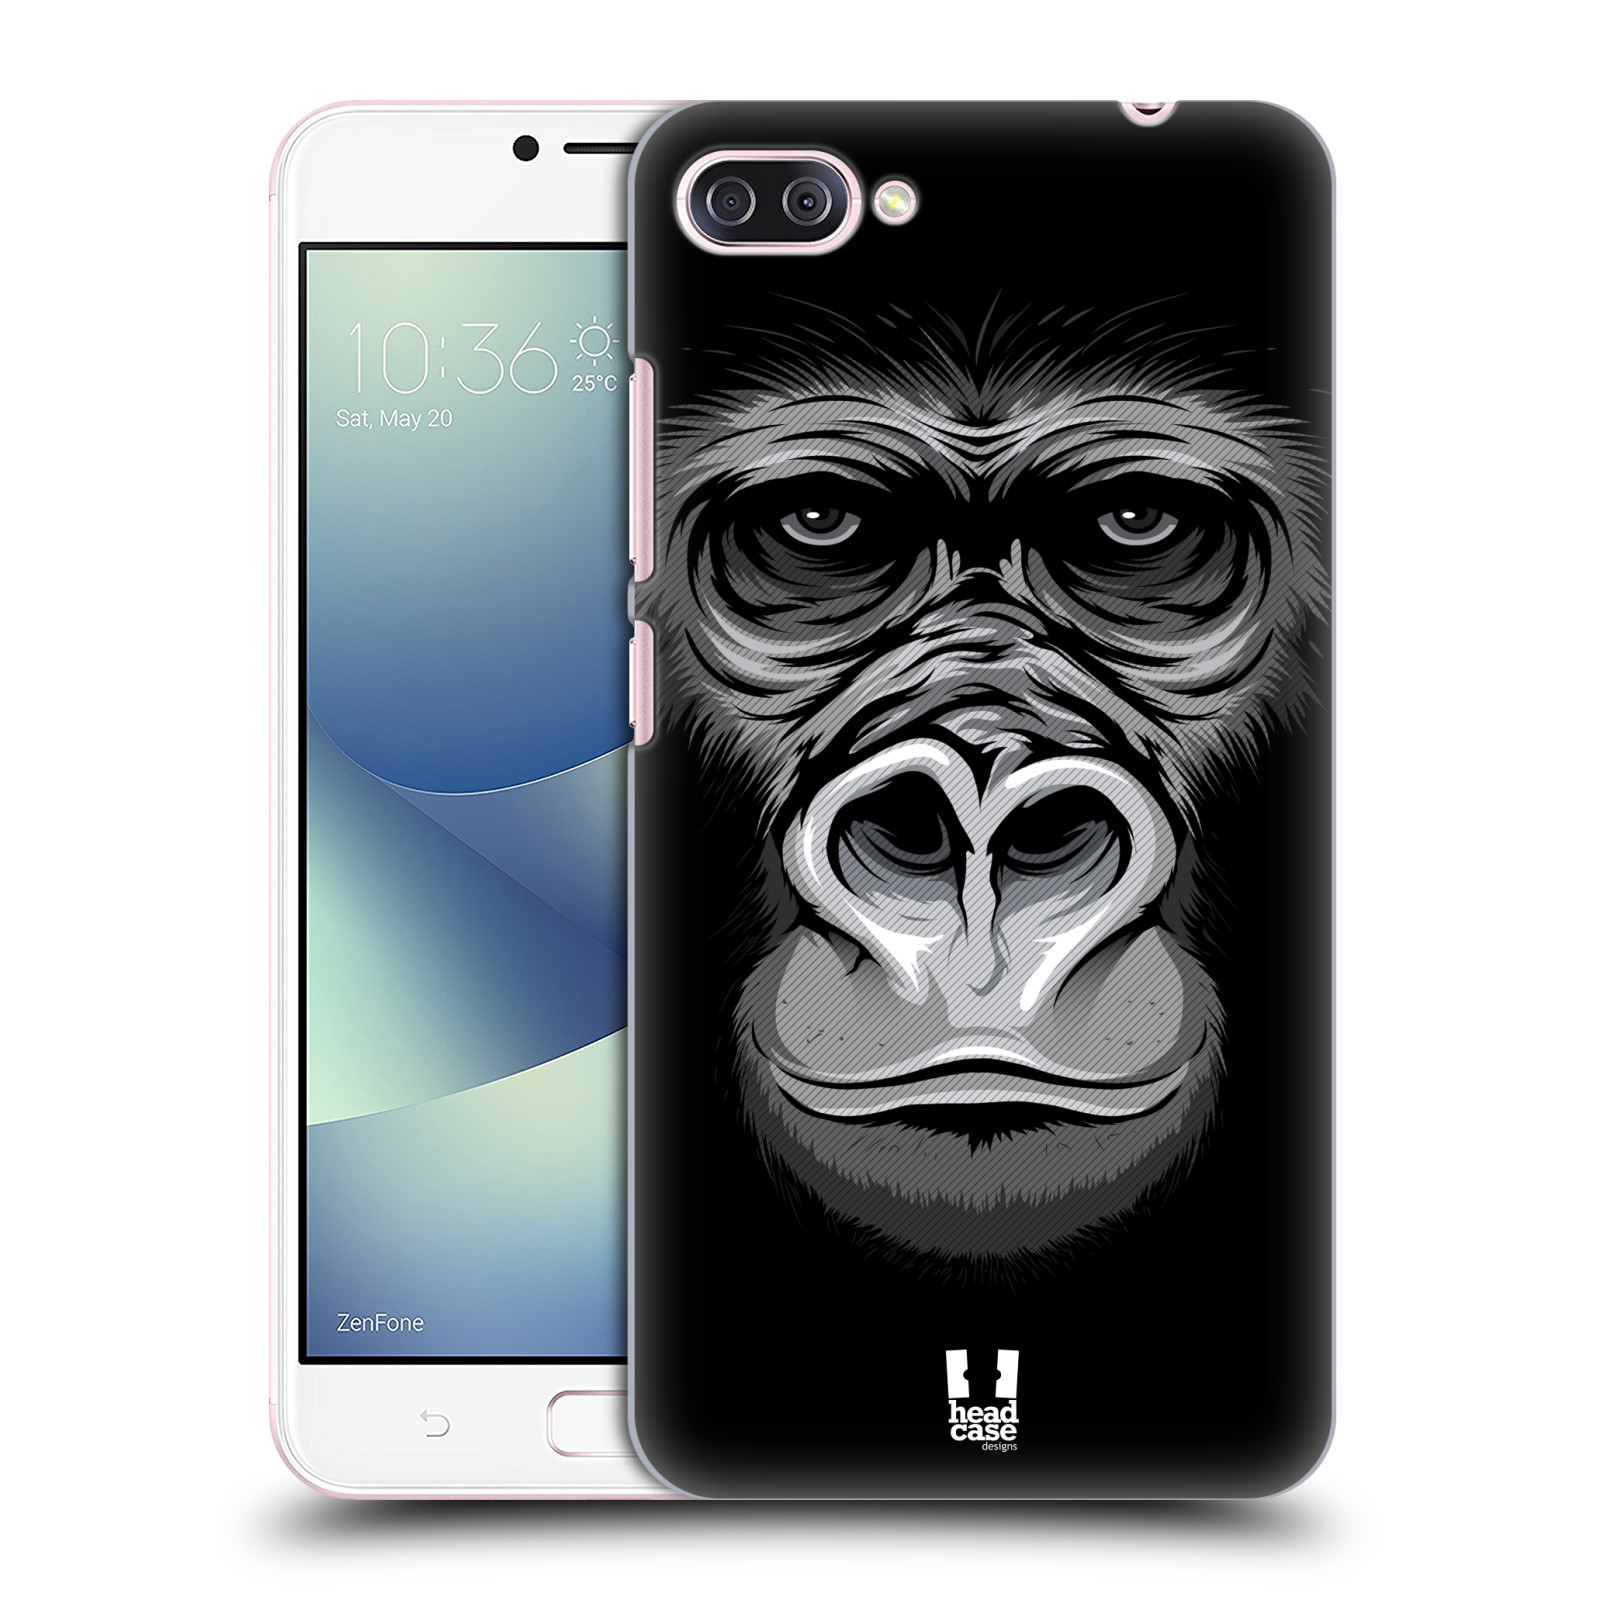 HEAD CASE plastový obal na mobil Asus Zenfone 4 MAX ZC554KL vzor Zvíře kreslená tvář 2 gorila